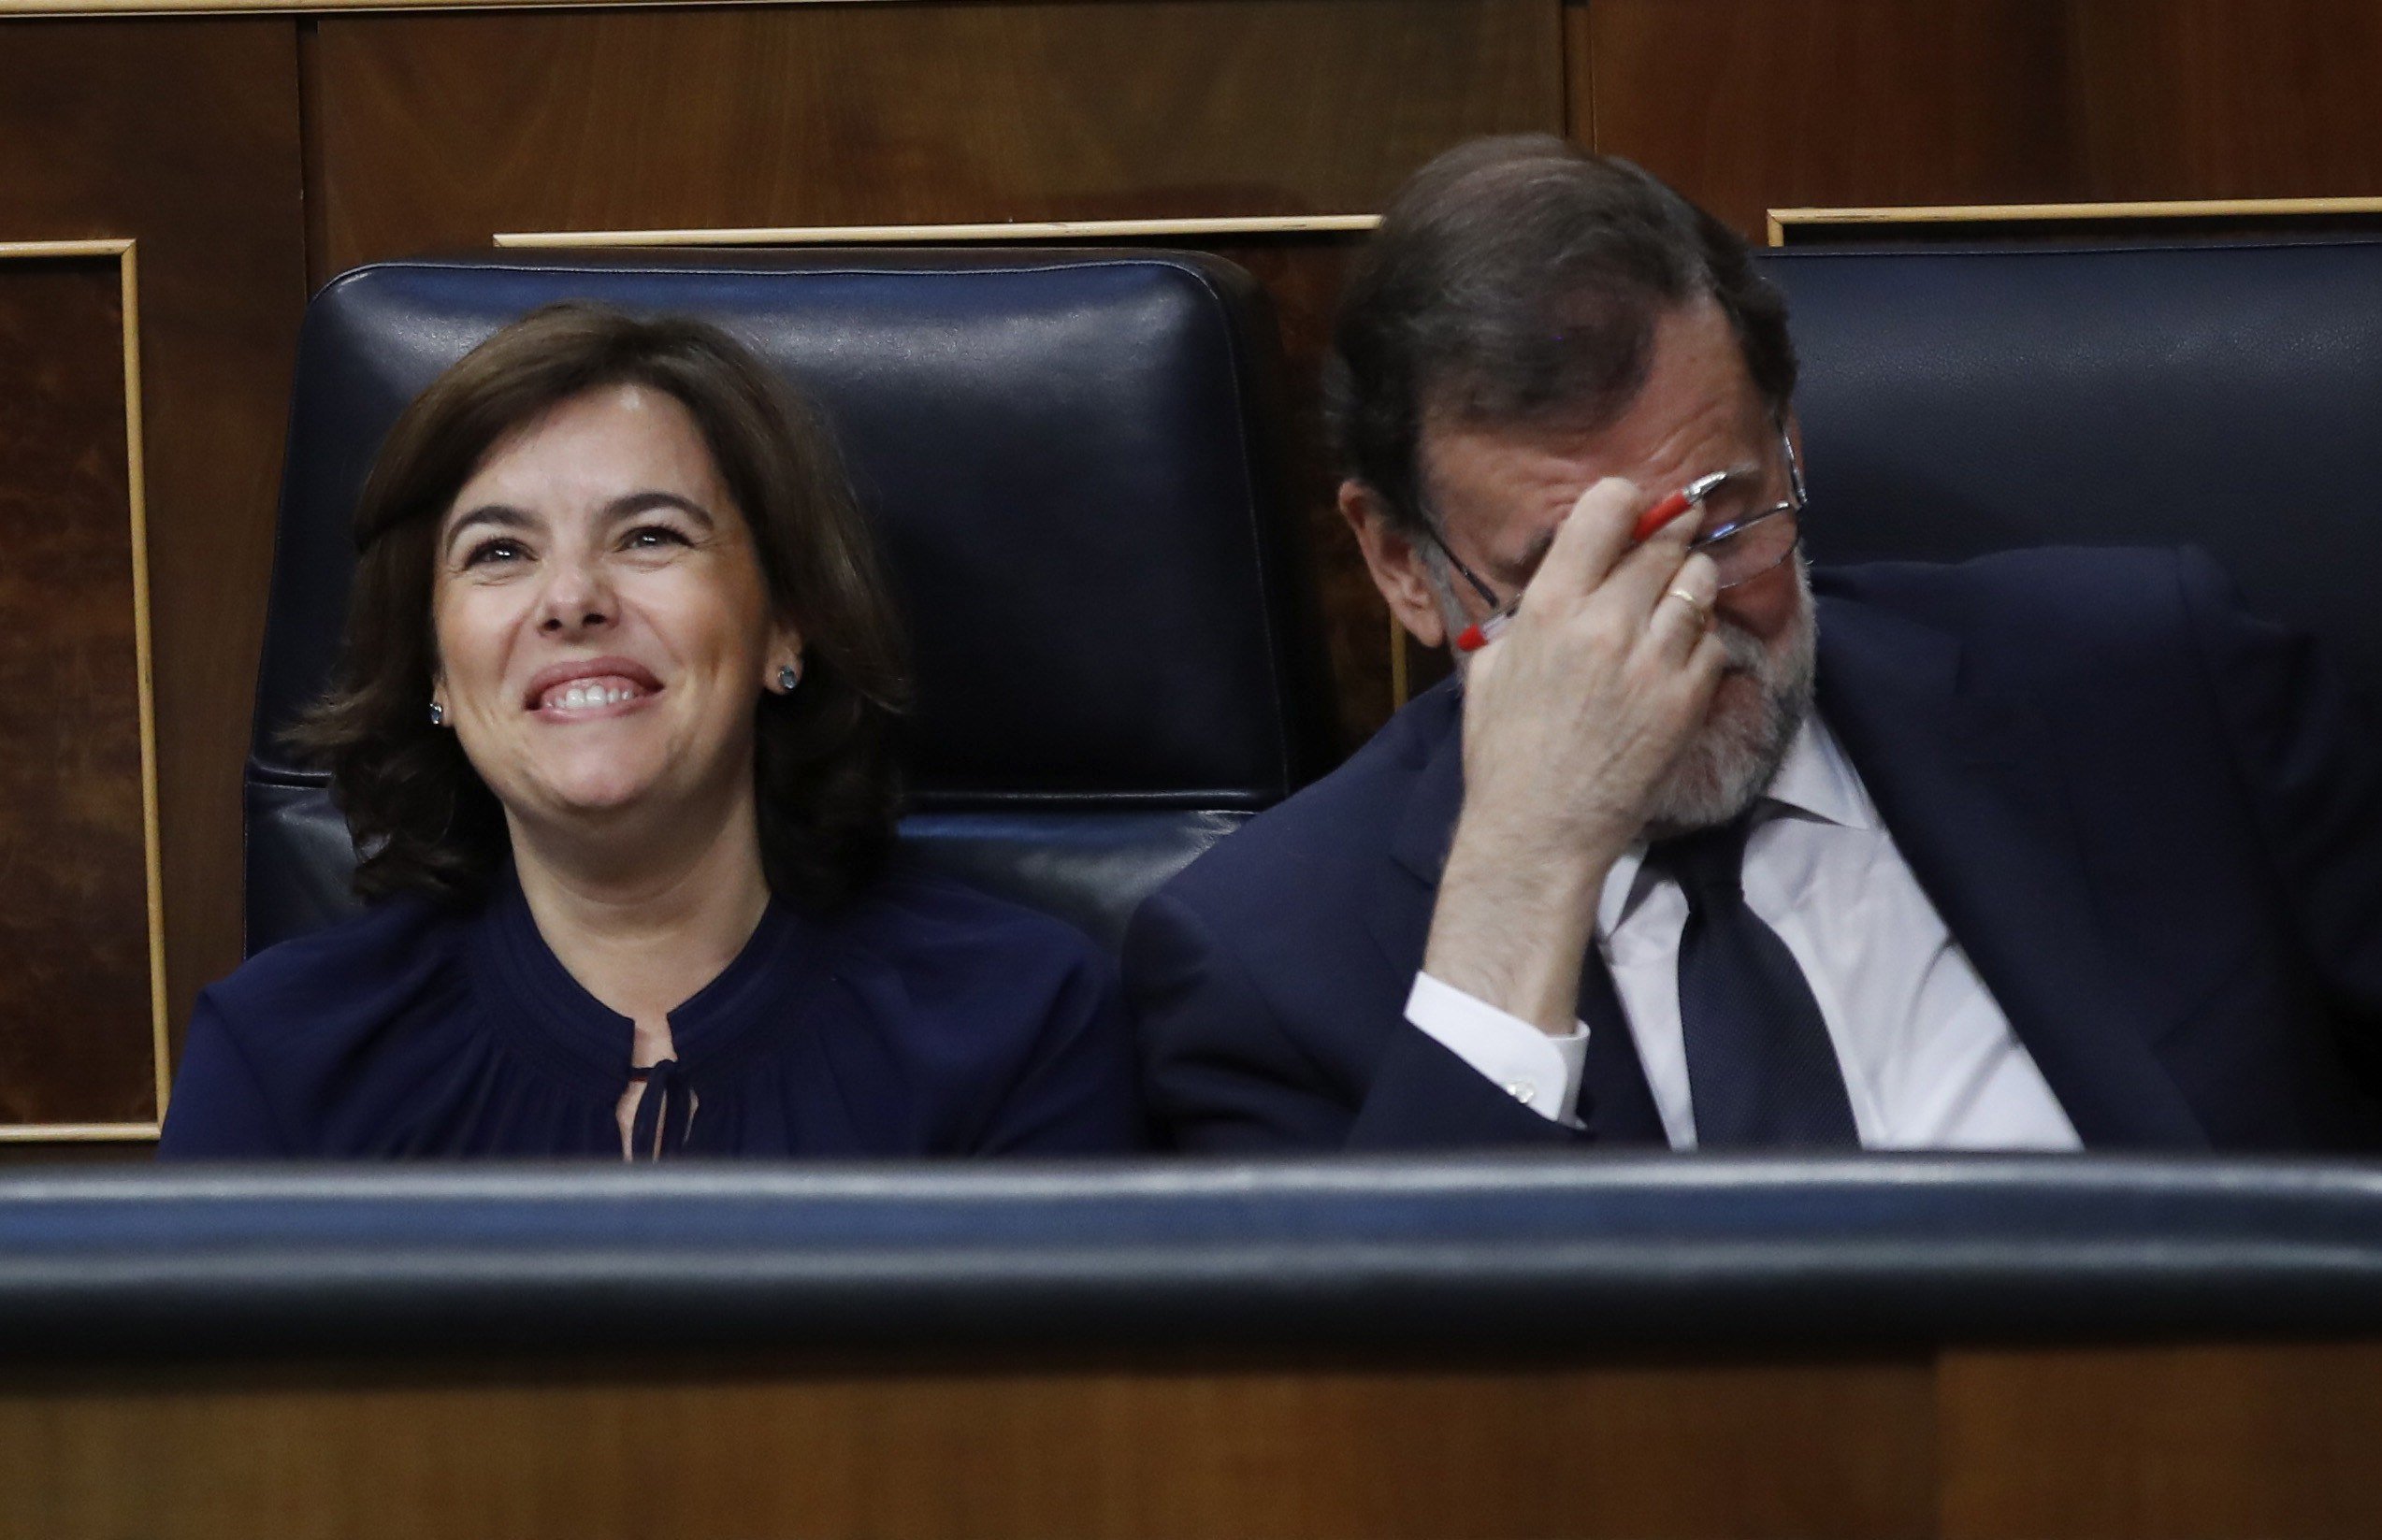 Les noves frases sense sentit de Rajoy emplenen la xarxa de memes